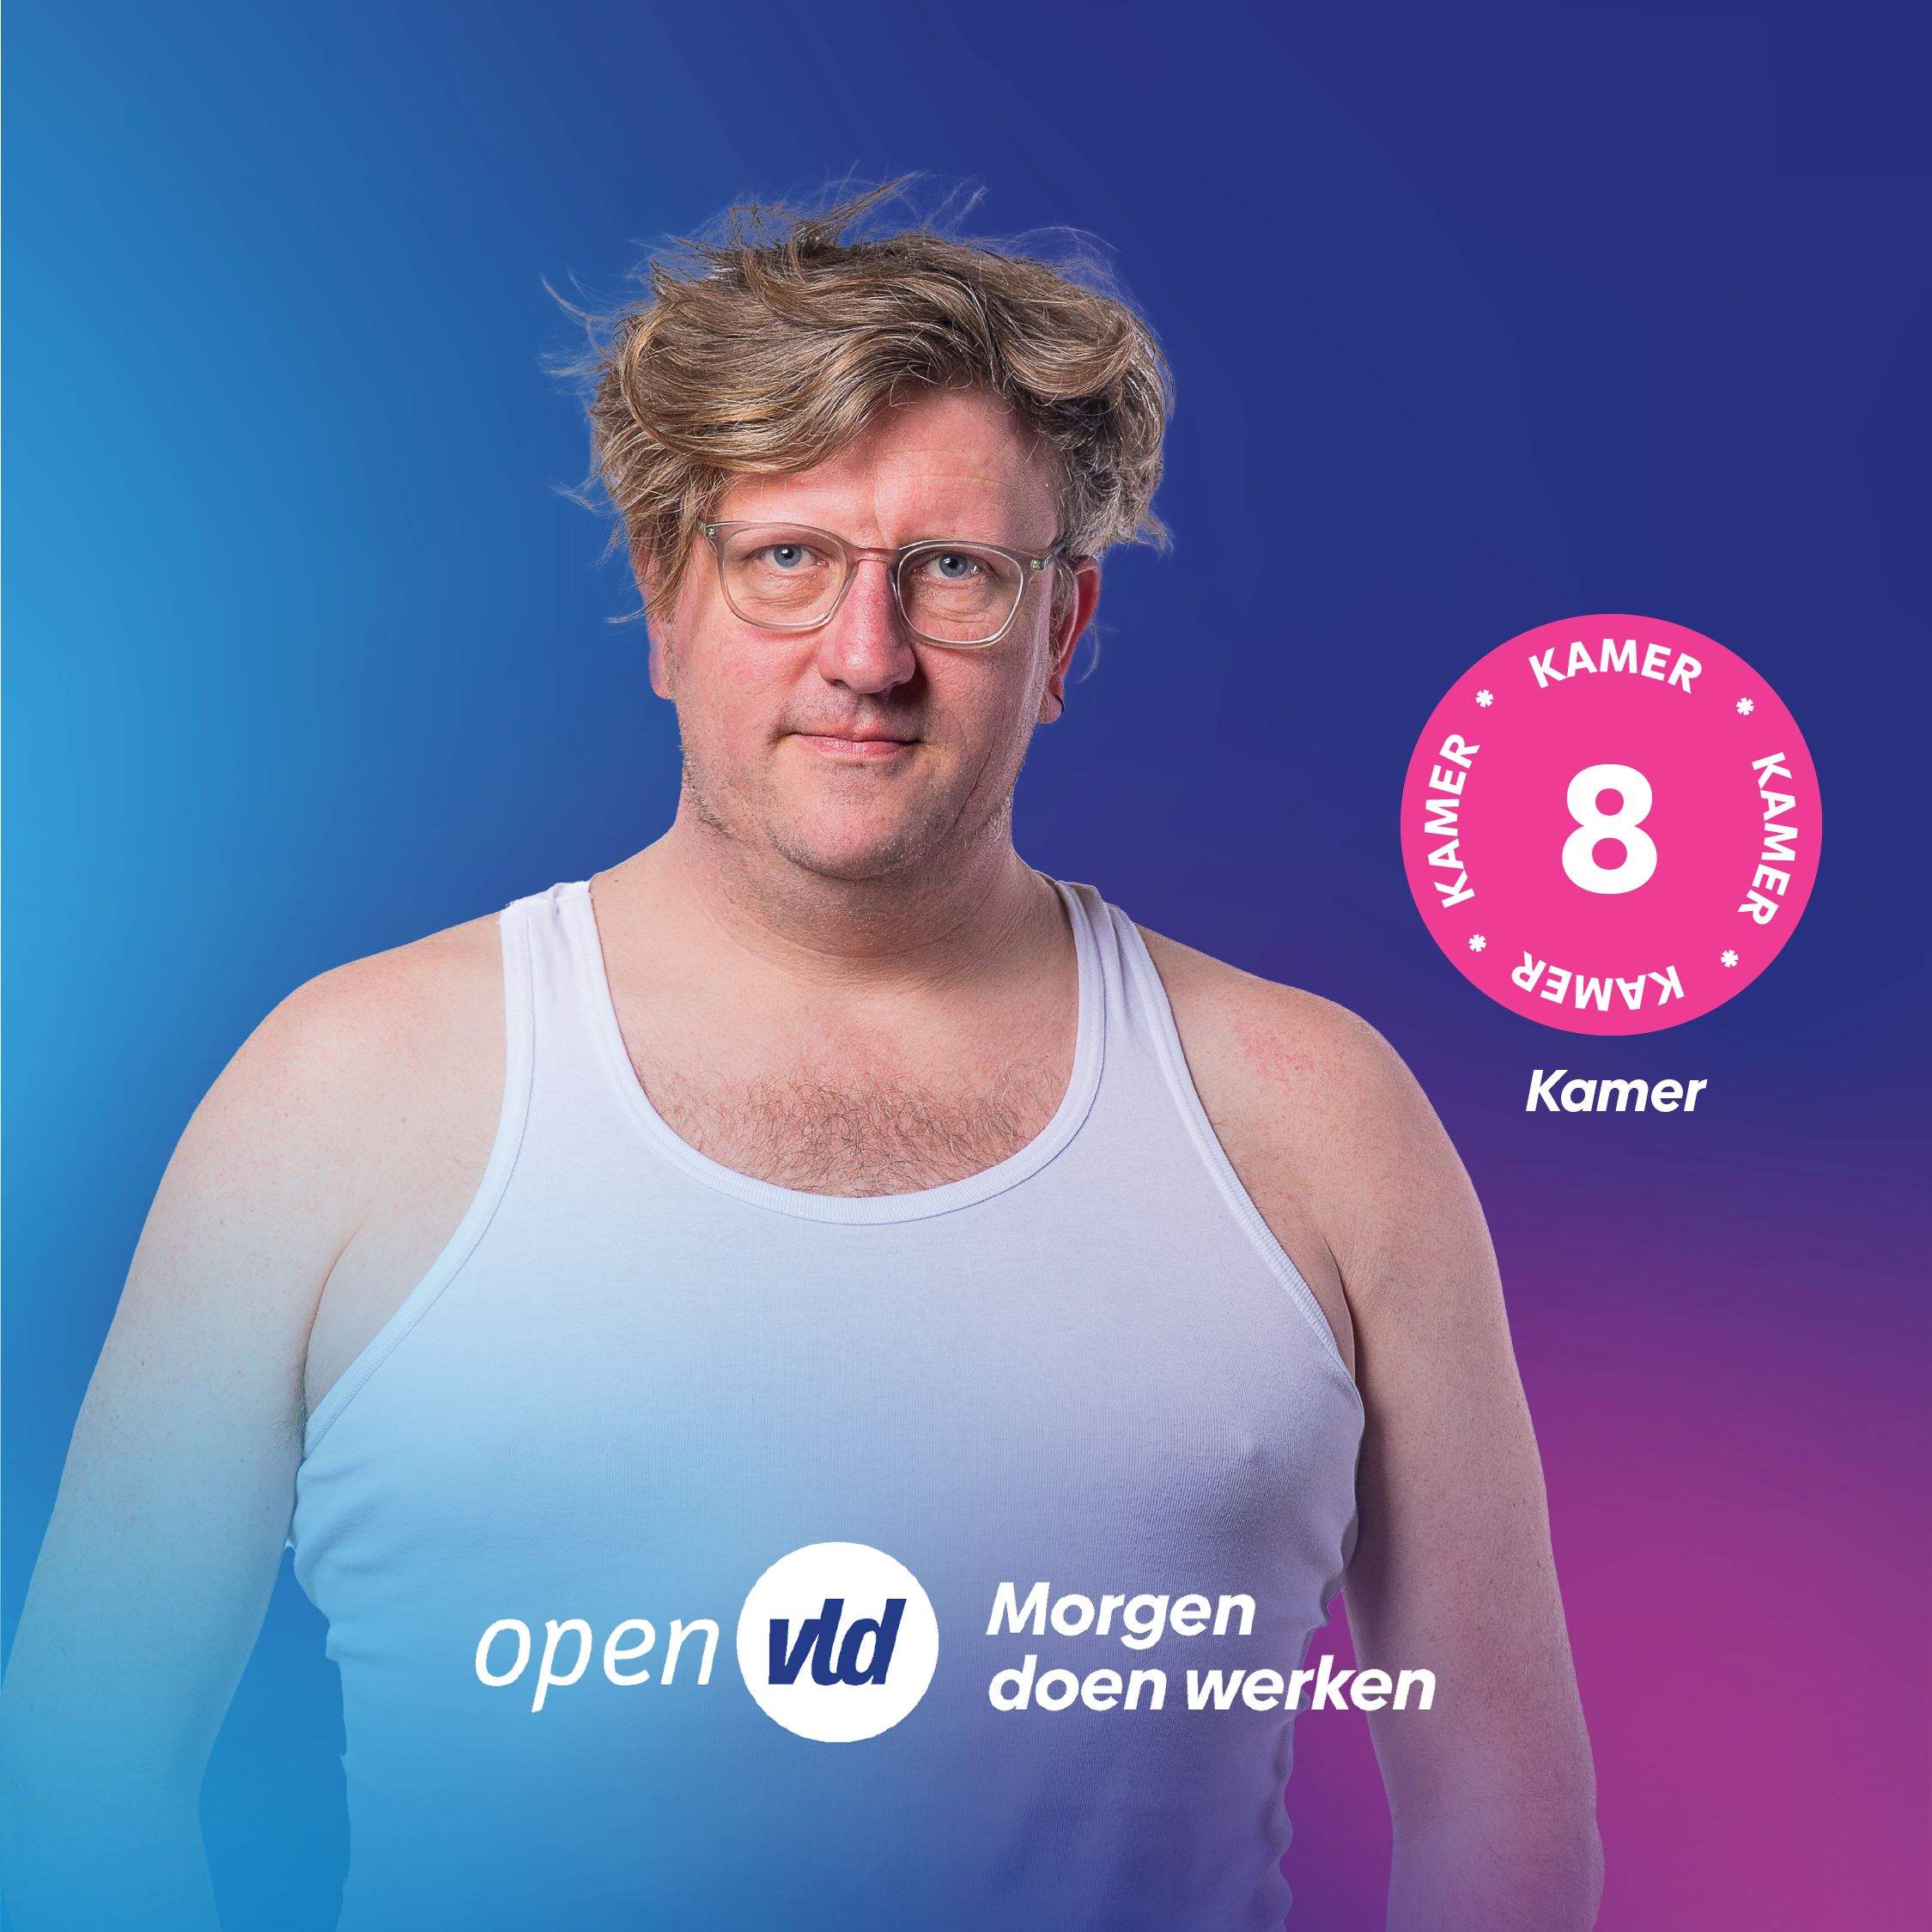 ¿Quién es el candidato belga que sale en las fotos de campaña con camiseta imperio?